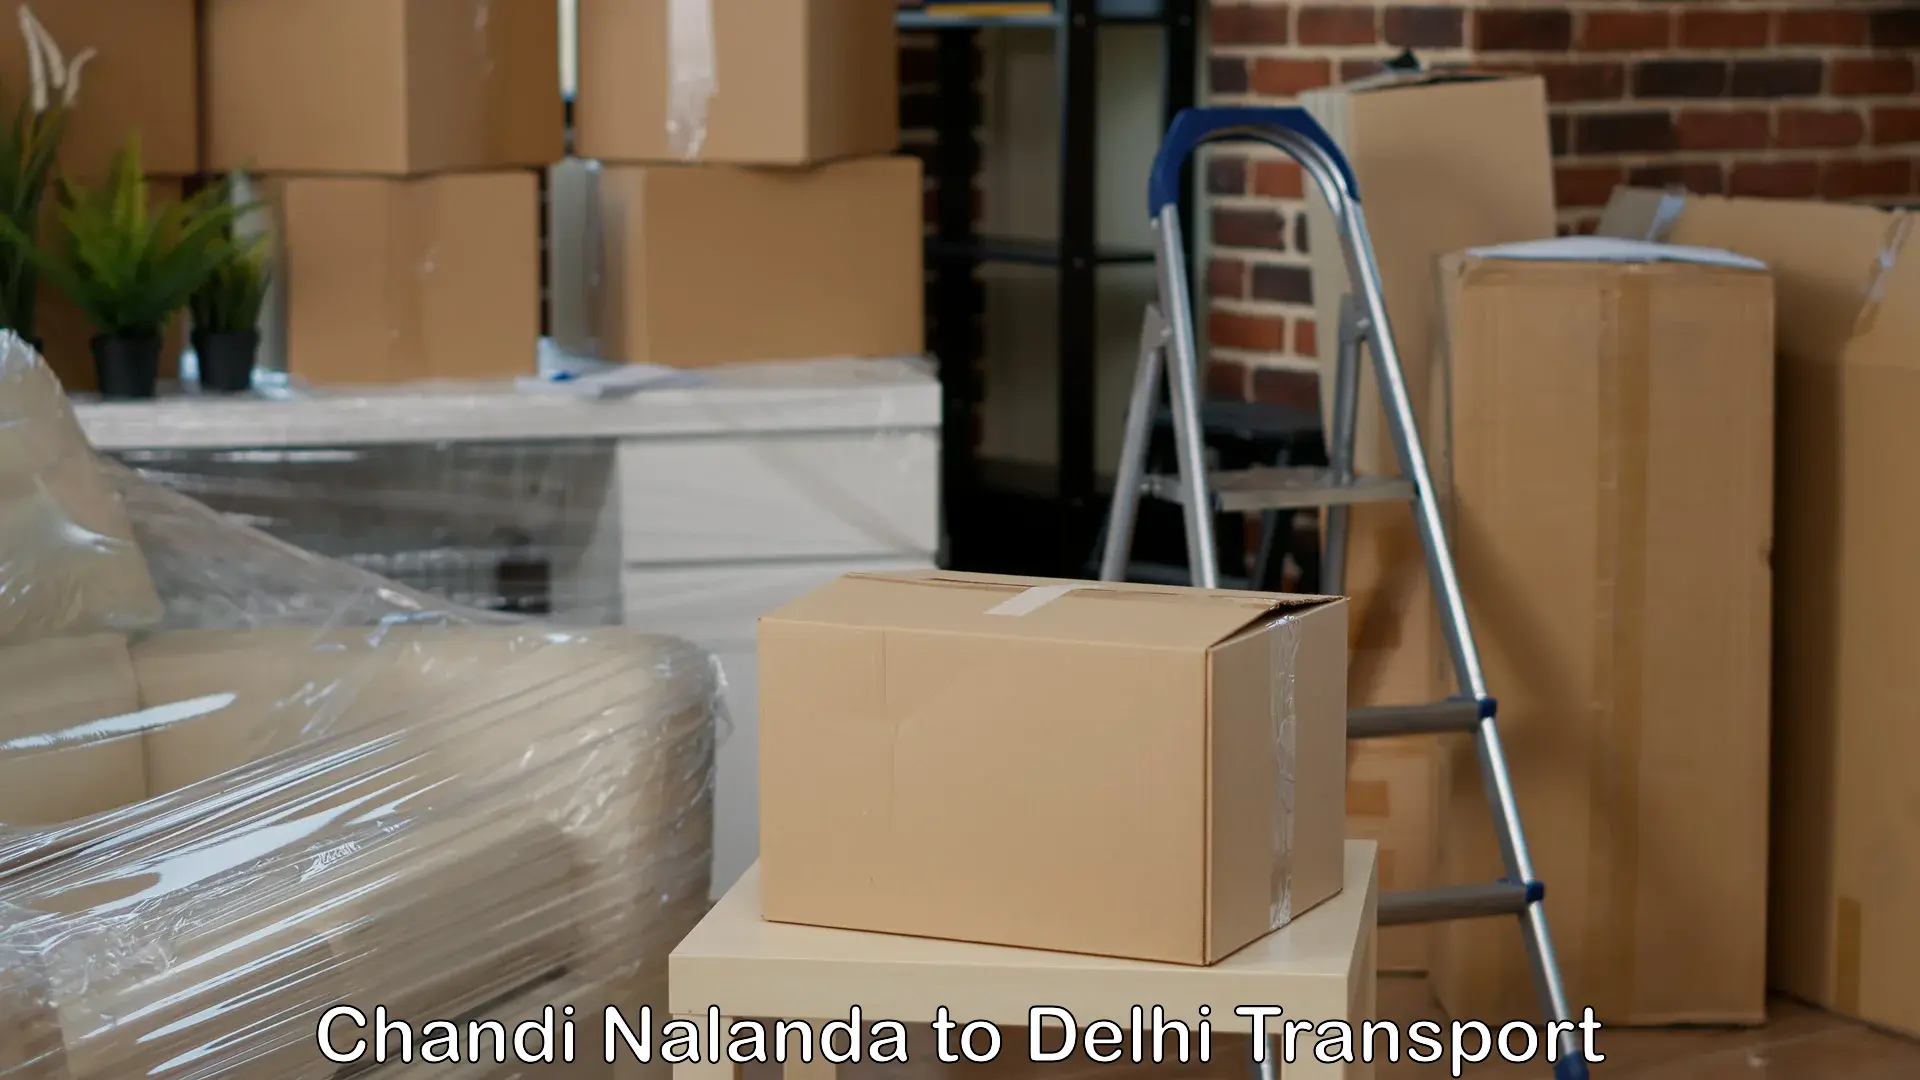 Delivery service Chandi Nalanda to Delhi